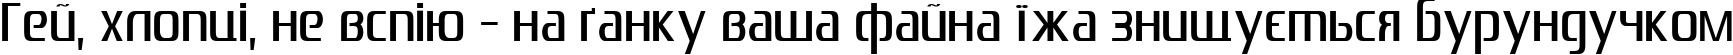 Пример написания шрифтом Zrnic Cyr Normal текста на украинском